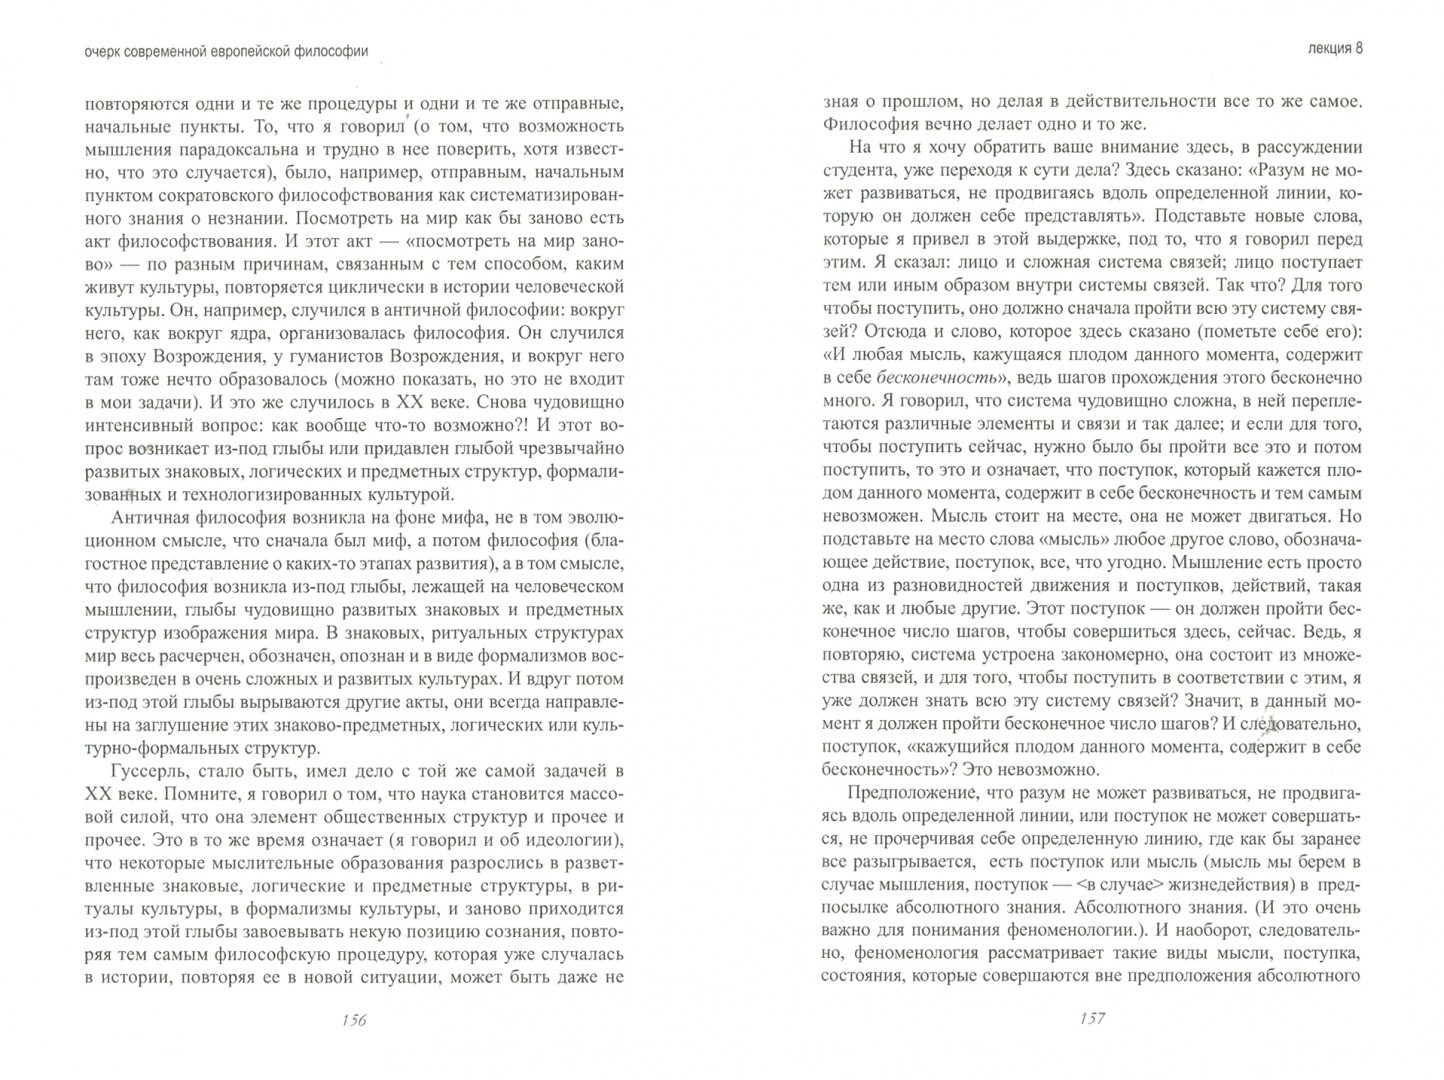 Иллюстрация 1 из 4 для Очерк современной европейской философии - Мераб Мамардашвили | Лабиринт - книги. Источник: Лабиринт